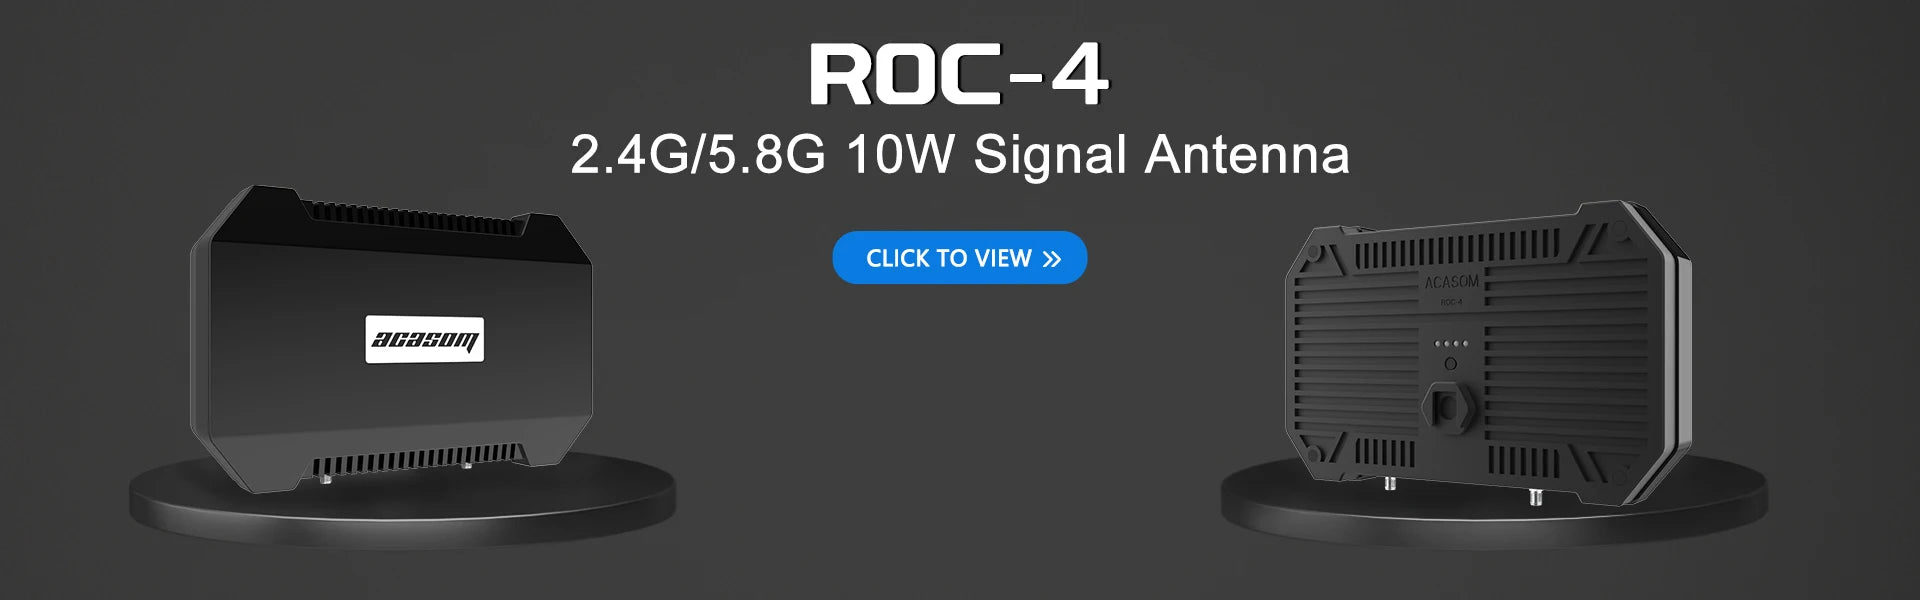 ACASOM Fio 2.4G/5.8G 1OW Signal Antenna